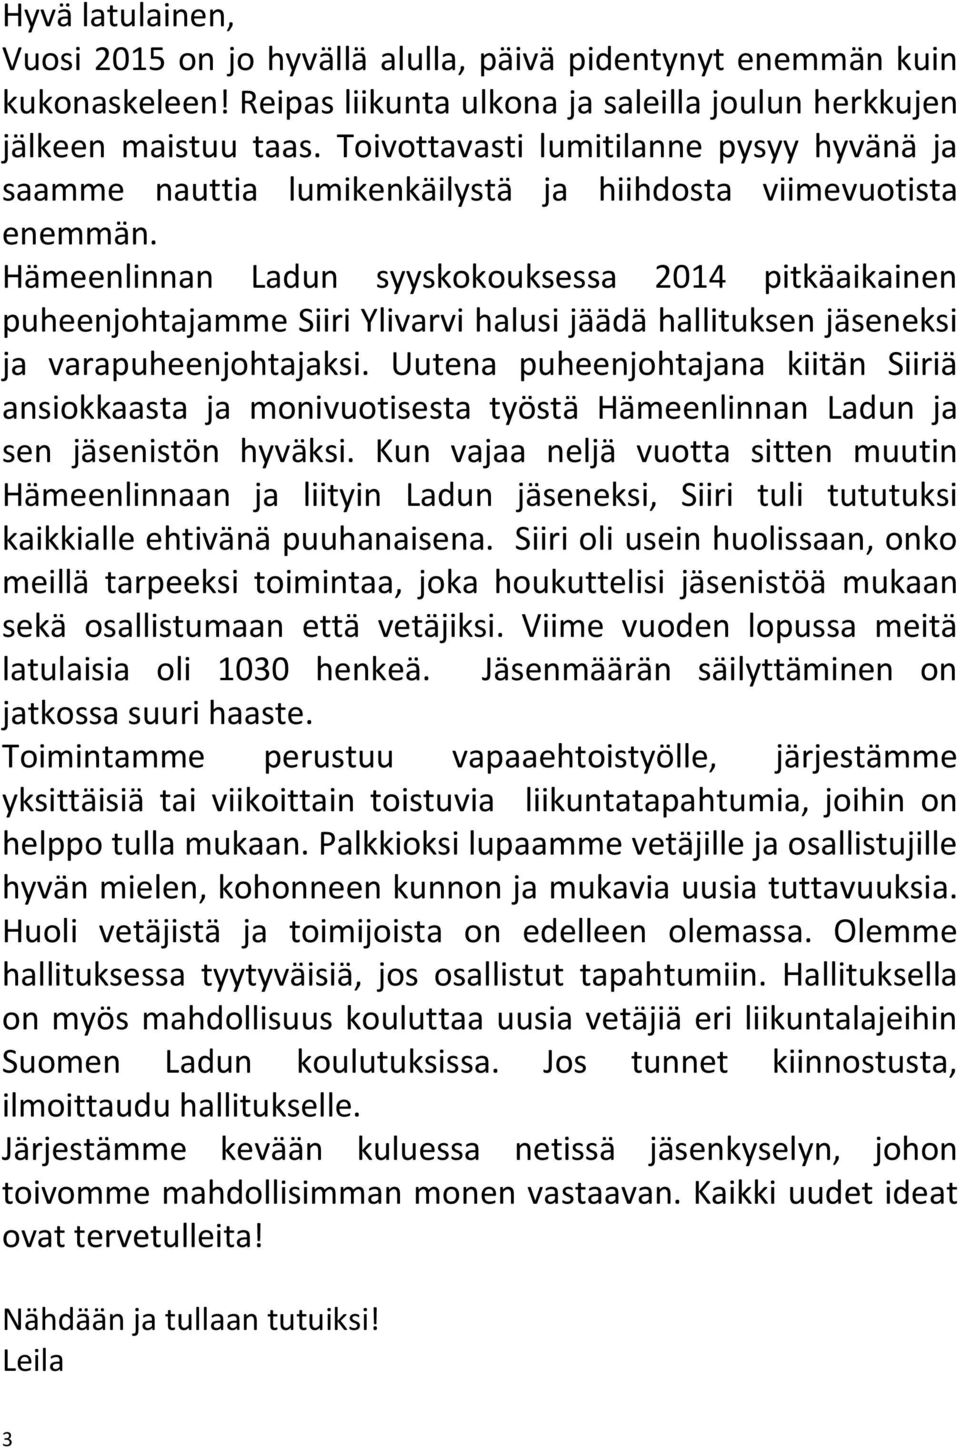 Hämeenlinnan Ladun syyskokouksessa 2014 pitkäaikainen puheenjohtajamme Siiri Ylivarvi halusi jäädä hallituksen jäseneksi ja varapuheenjohtajaksi.